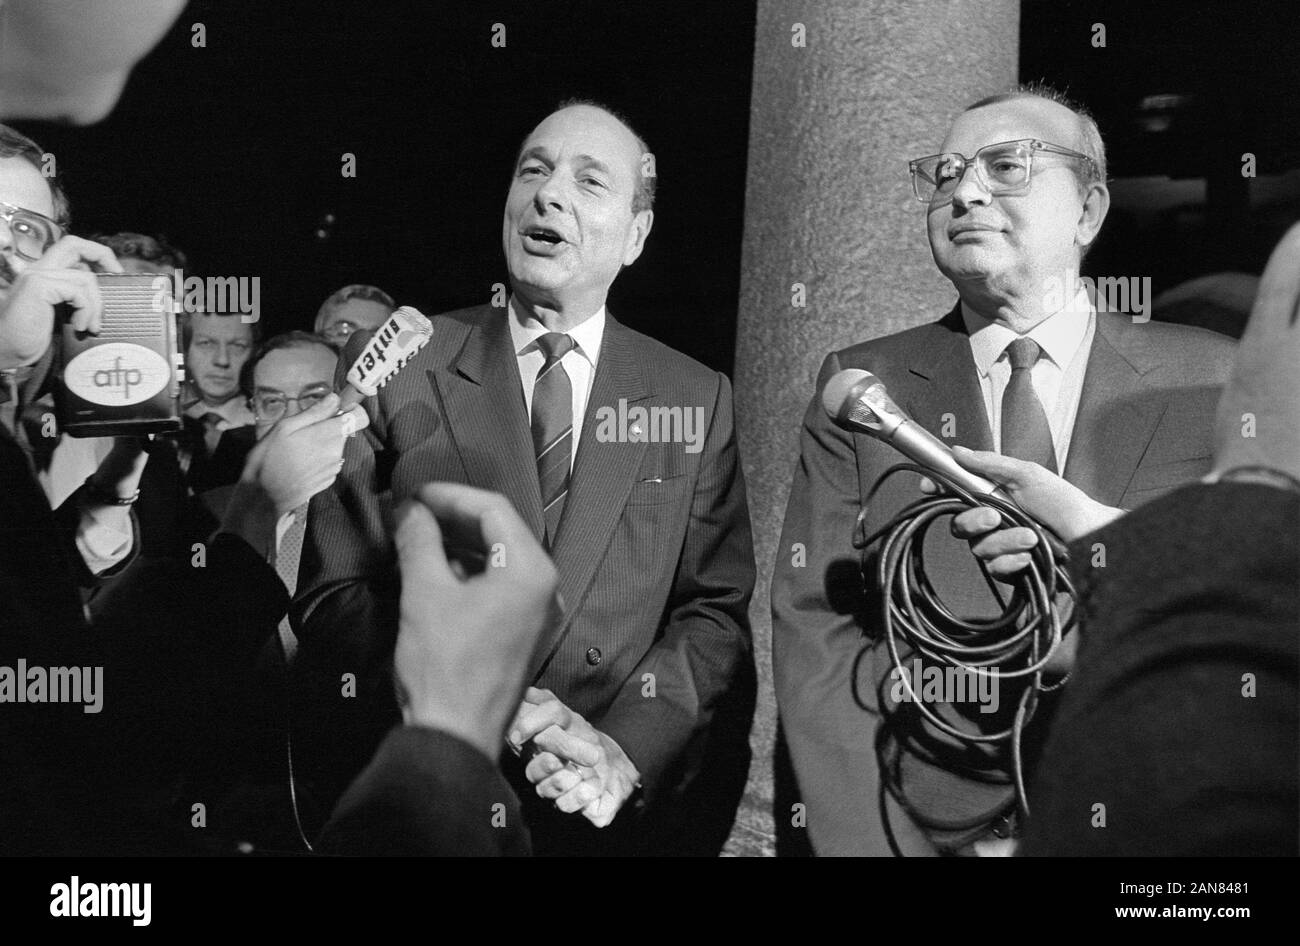 Milan (Italie), avril 1986, réunion entre Bettino Craxi, Premier ministre et secrétaire du PSI (Parti socialiste italien) avec Jacques Chirac, Premier Ministre de la République française Banque D'Images